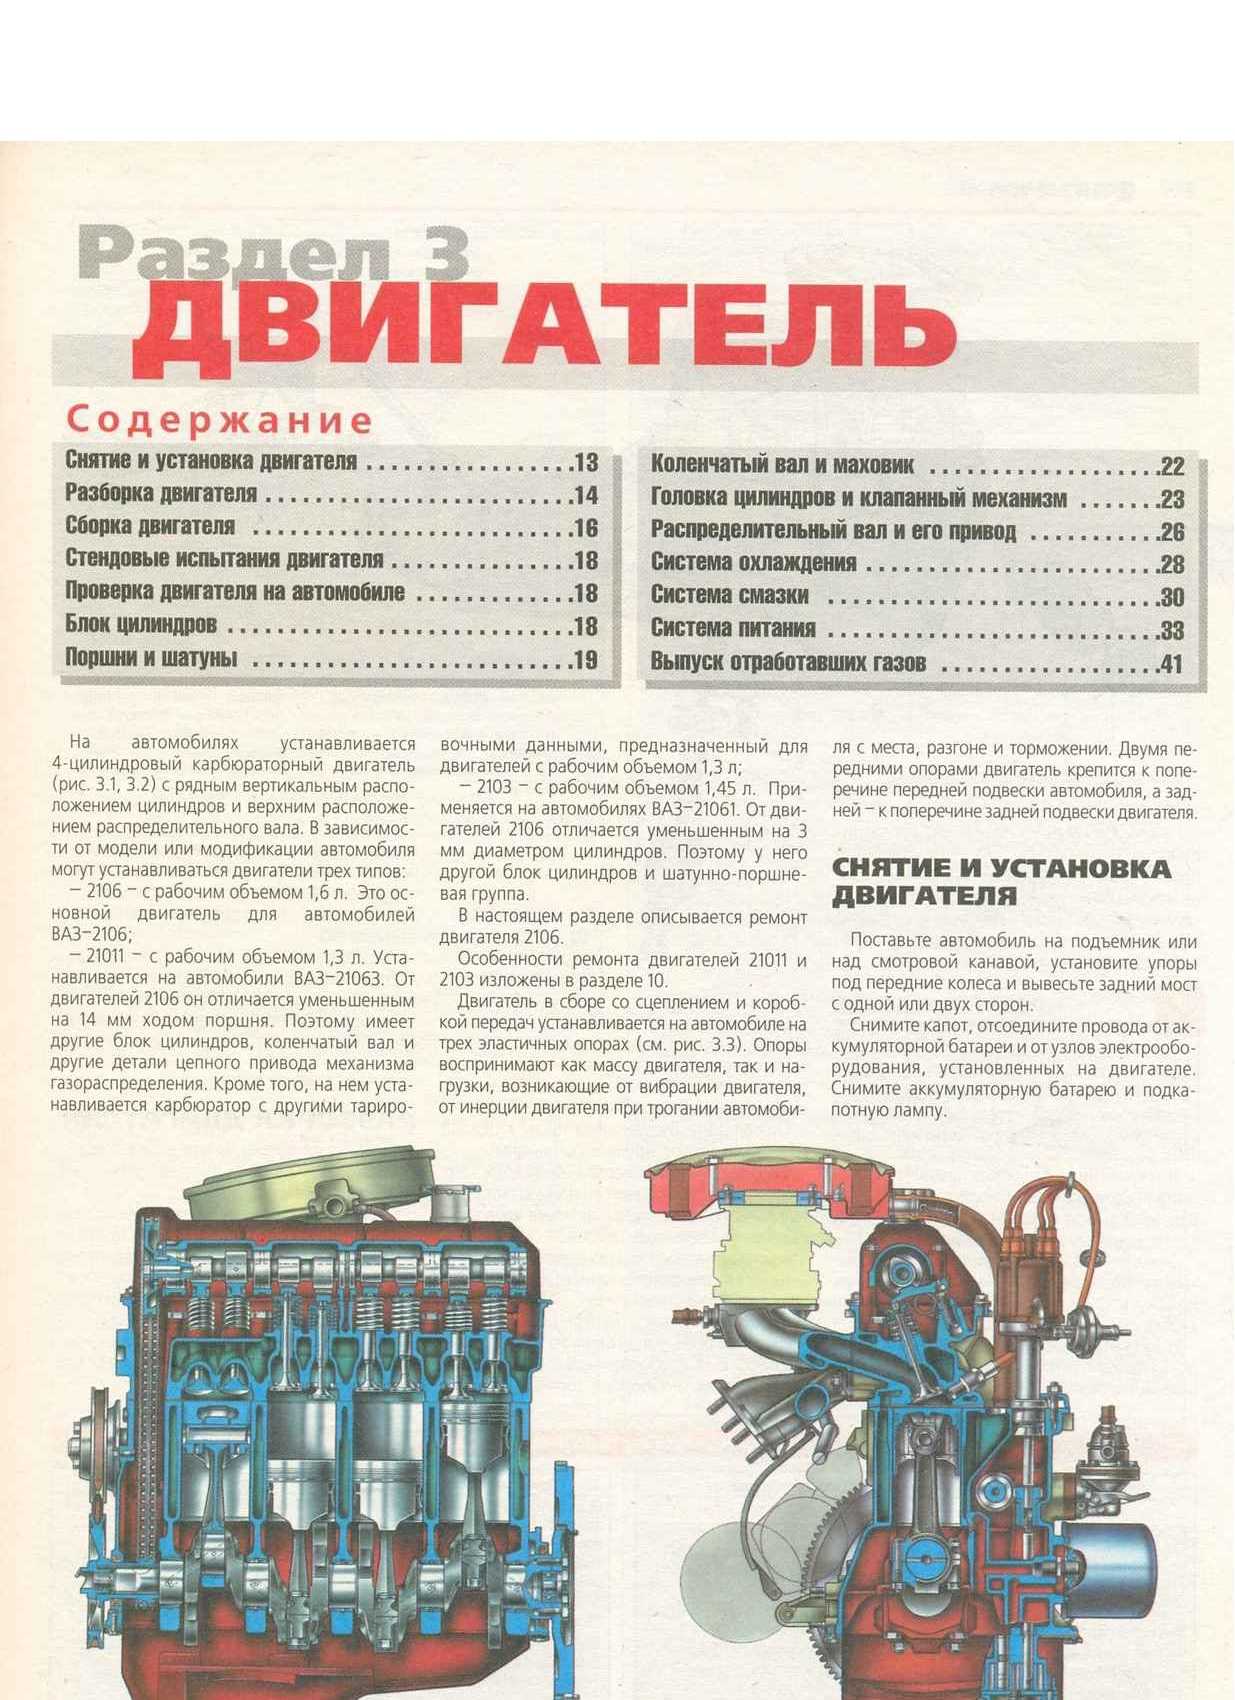 Ремонт двигателя  в москве.
 869  сто и 1164 отзывов, каталог автосервисов, карта, цены, рейтинг